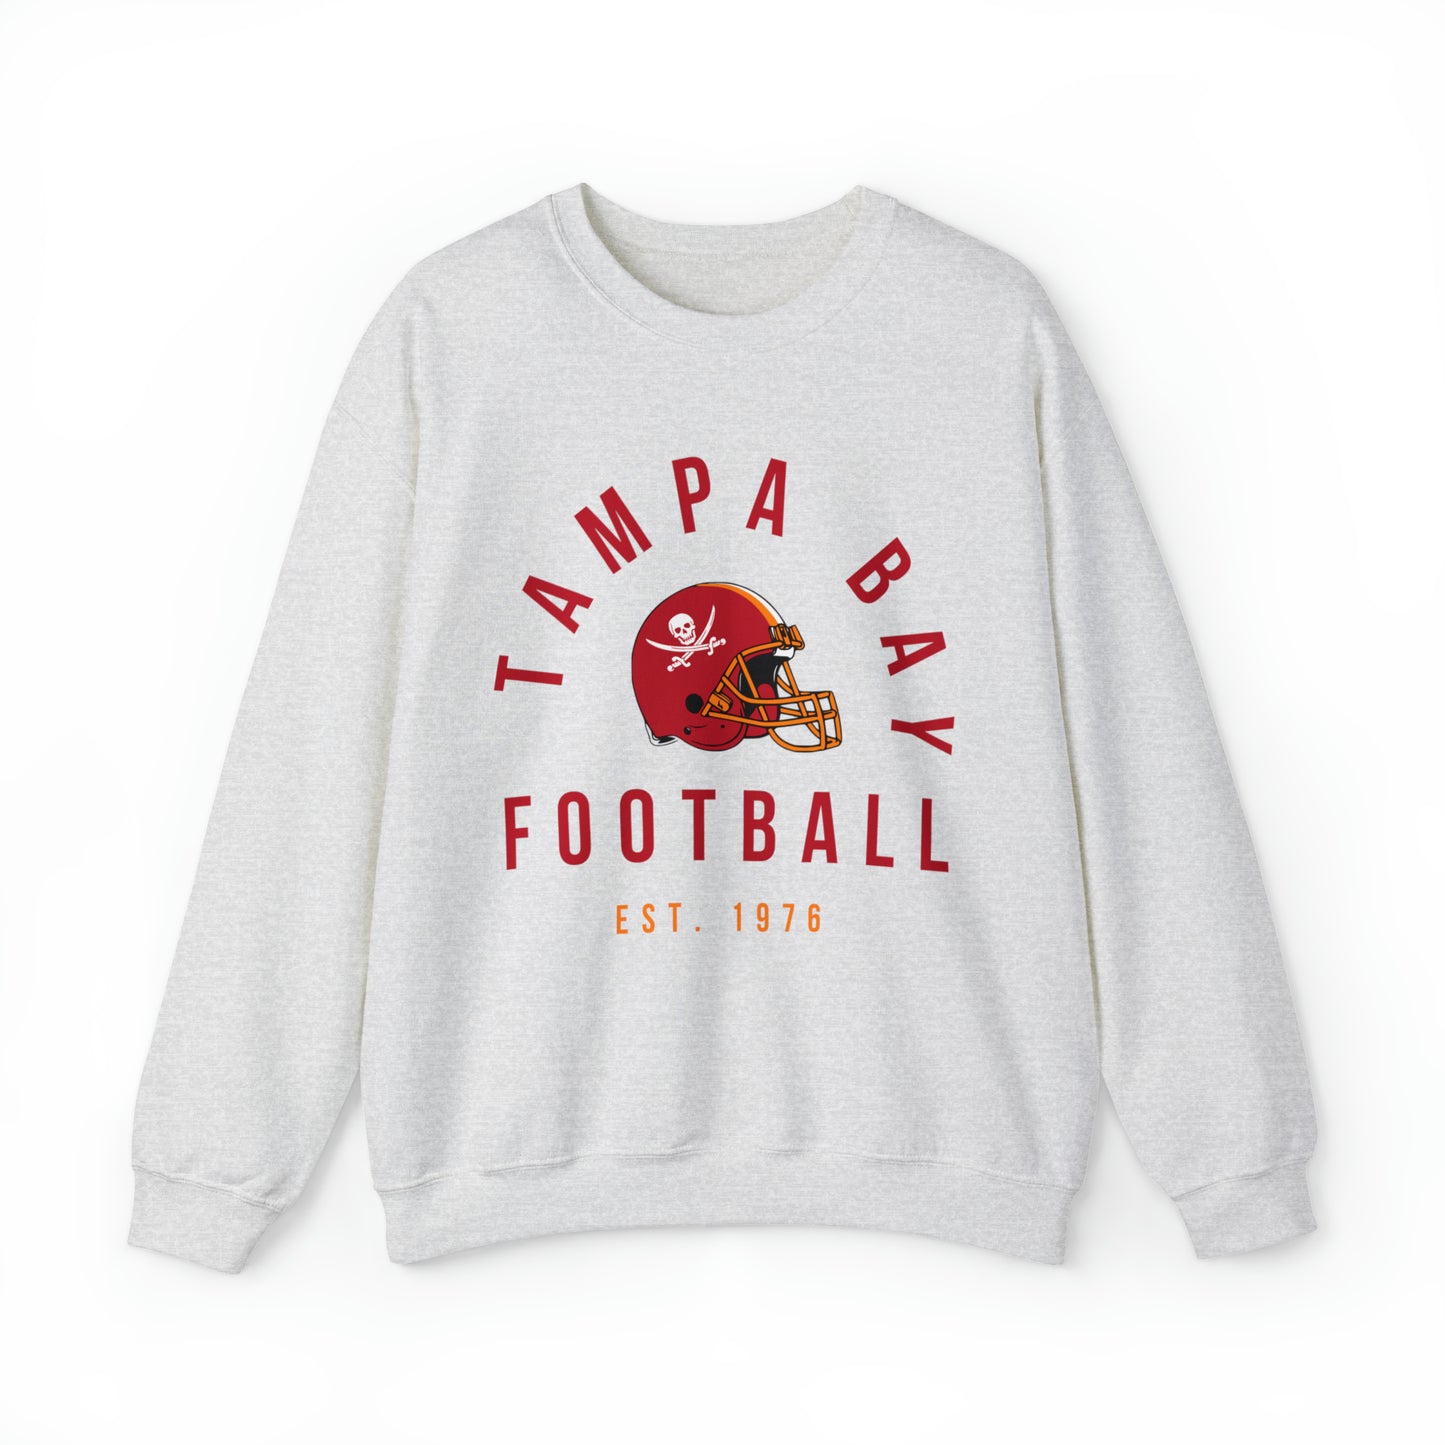 Throwback Tampa Bay Buccaneers Crewneck - Retro Men's & Women's Oversized Football Sweatshirt - Design 3